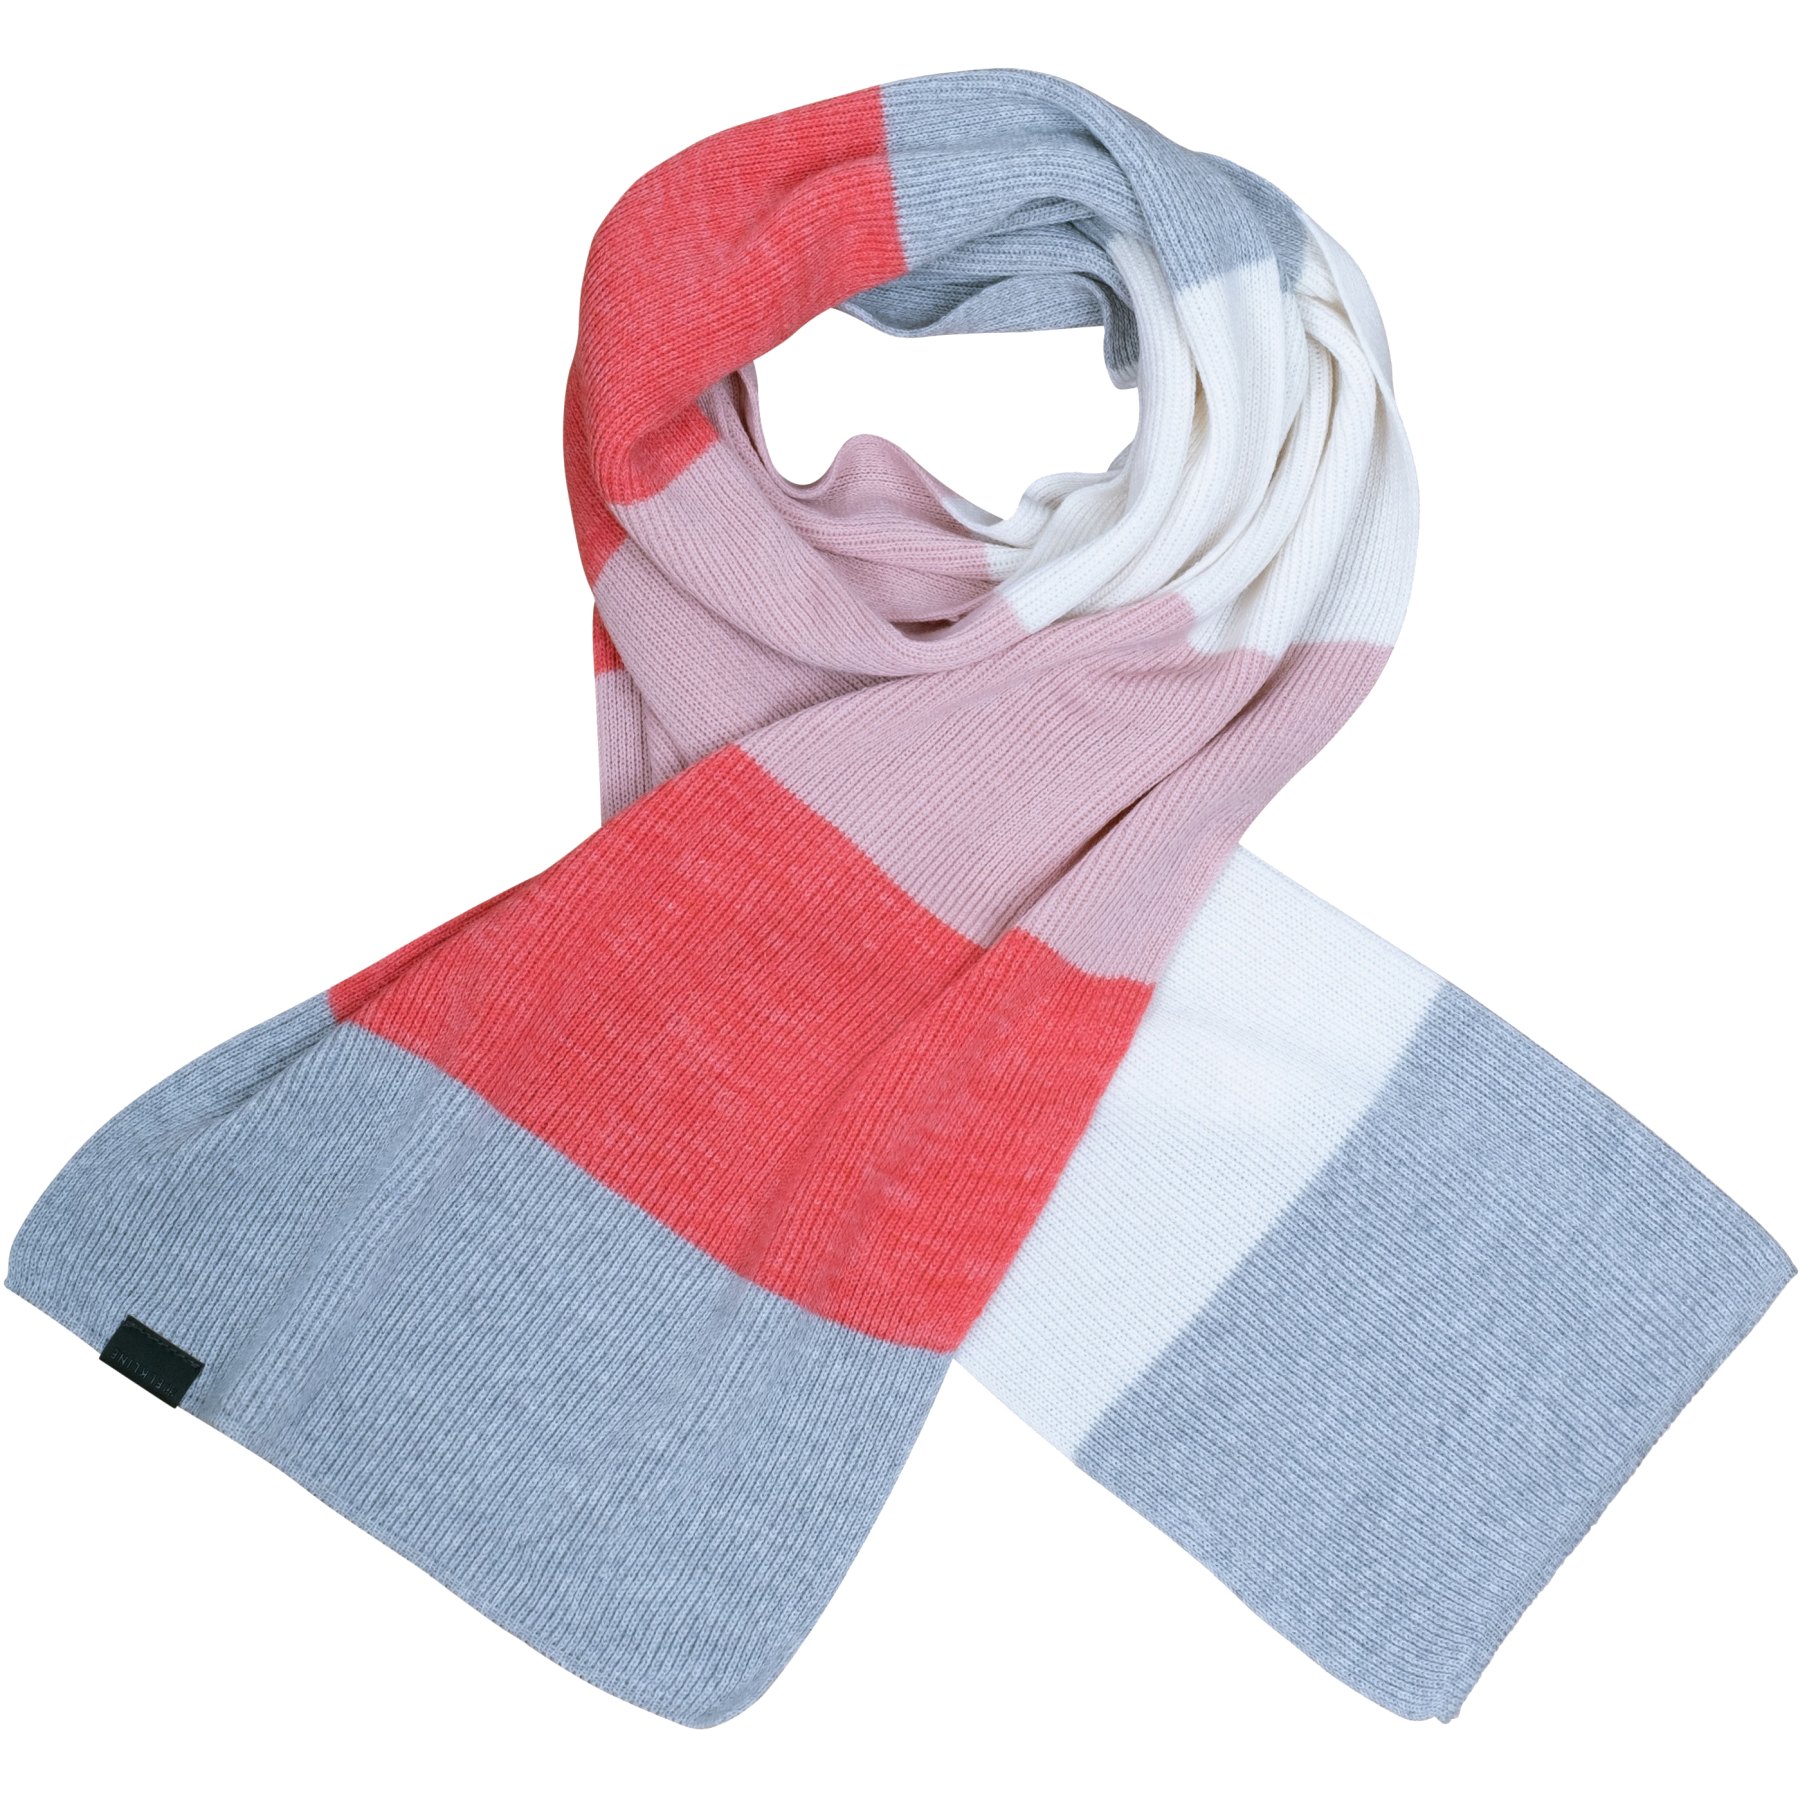 Produktbild von Elkline COLLEGE Schal Damen - pink - grau